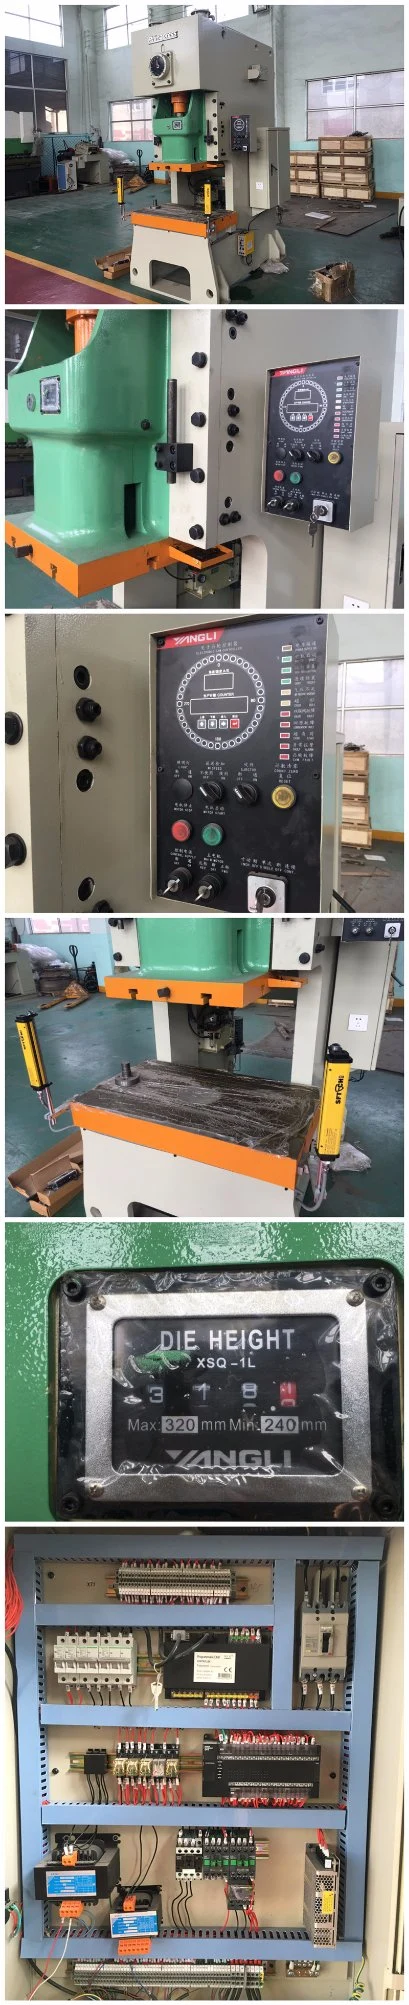 Jh21 Working Station CNC Punching Machine /CNC Turret Punch Press